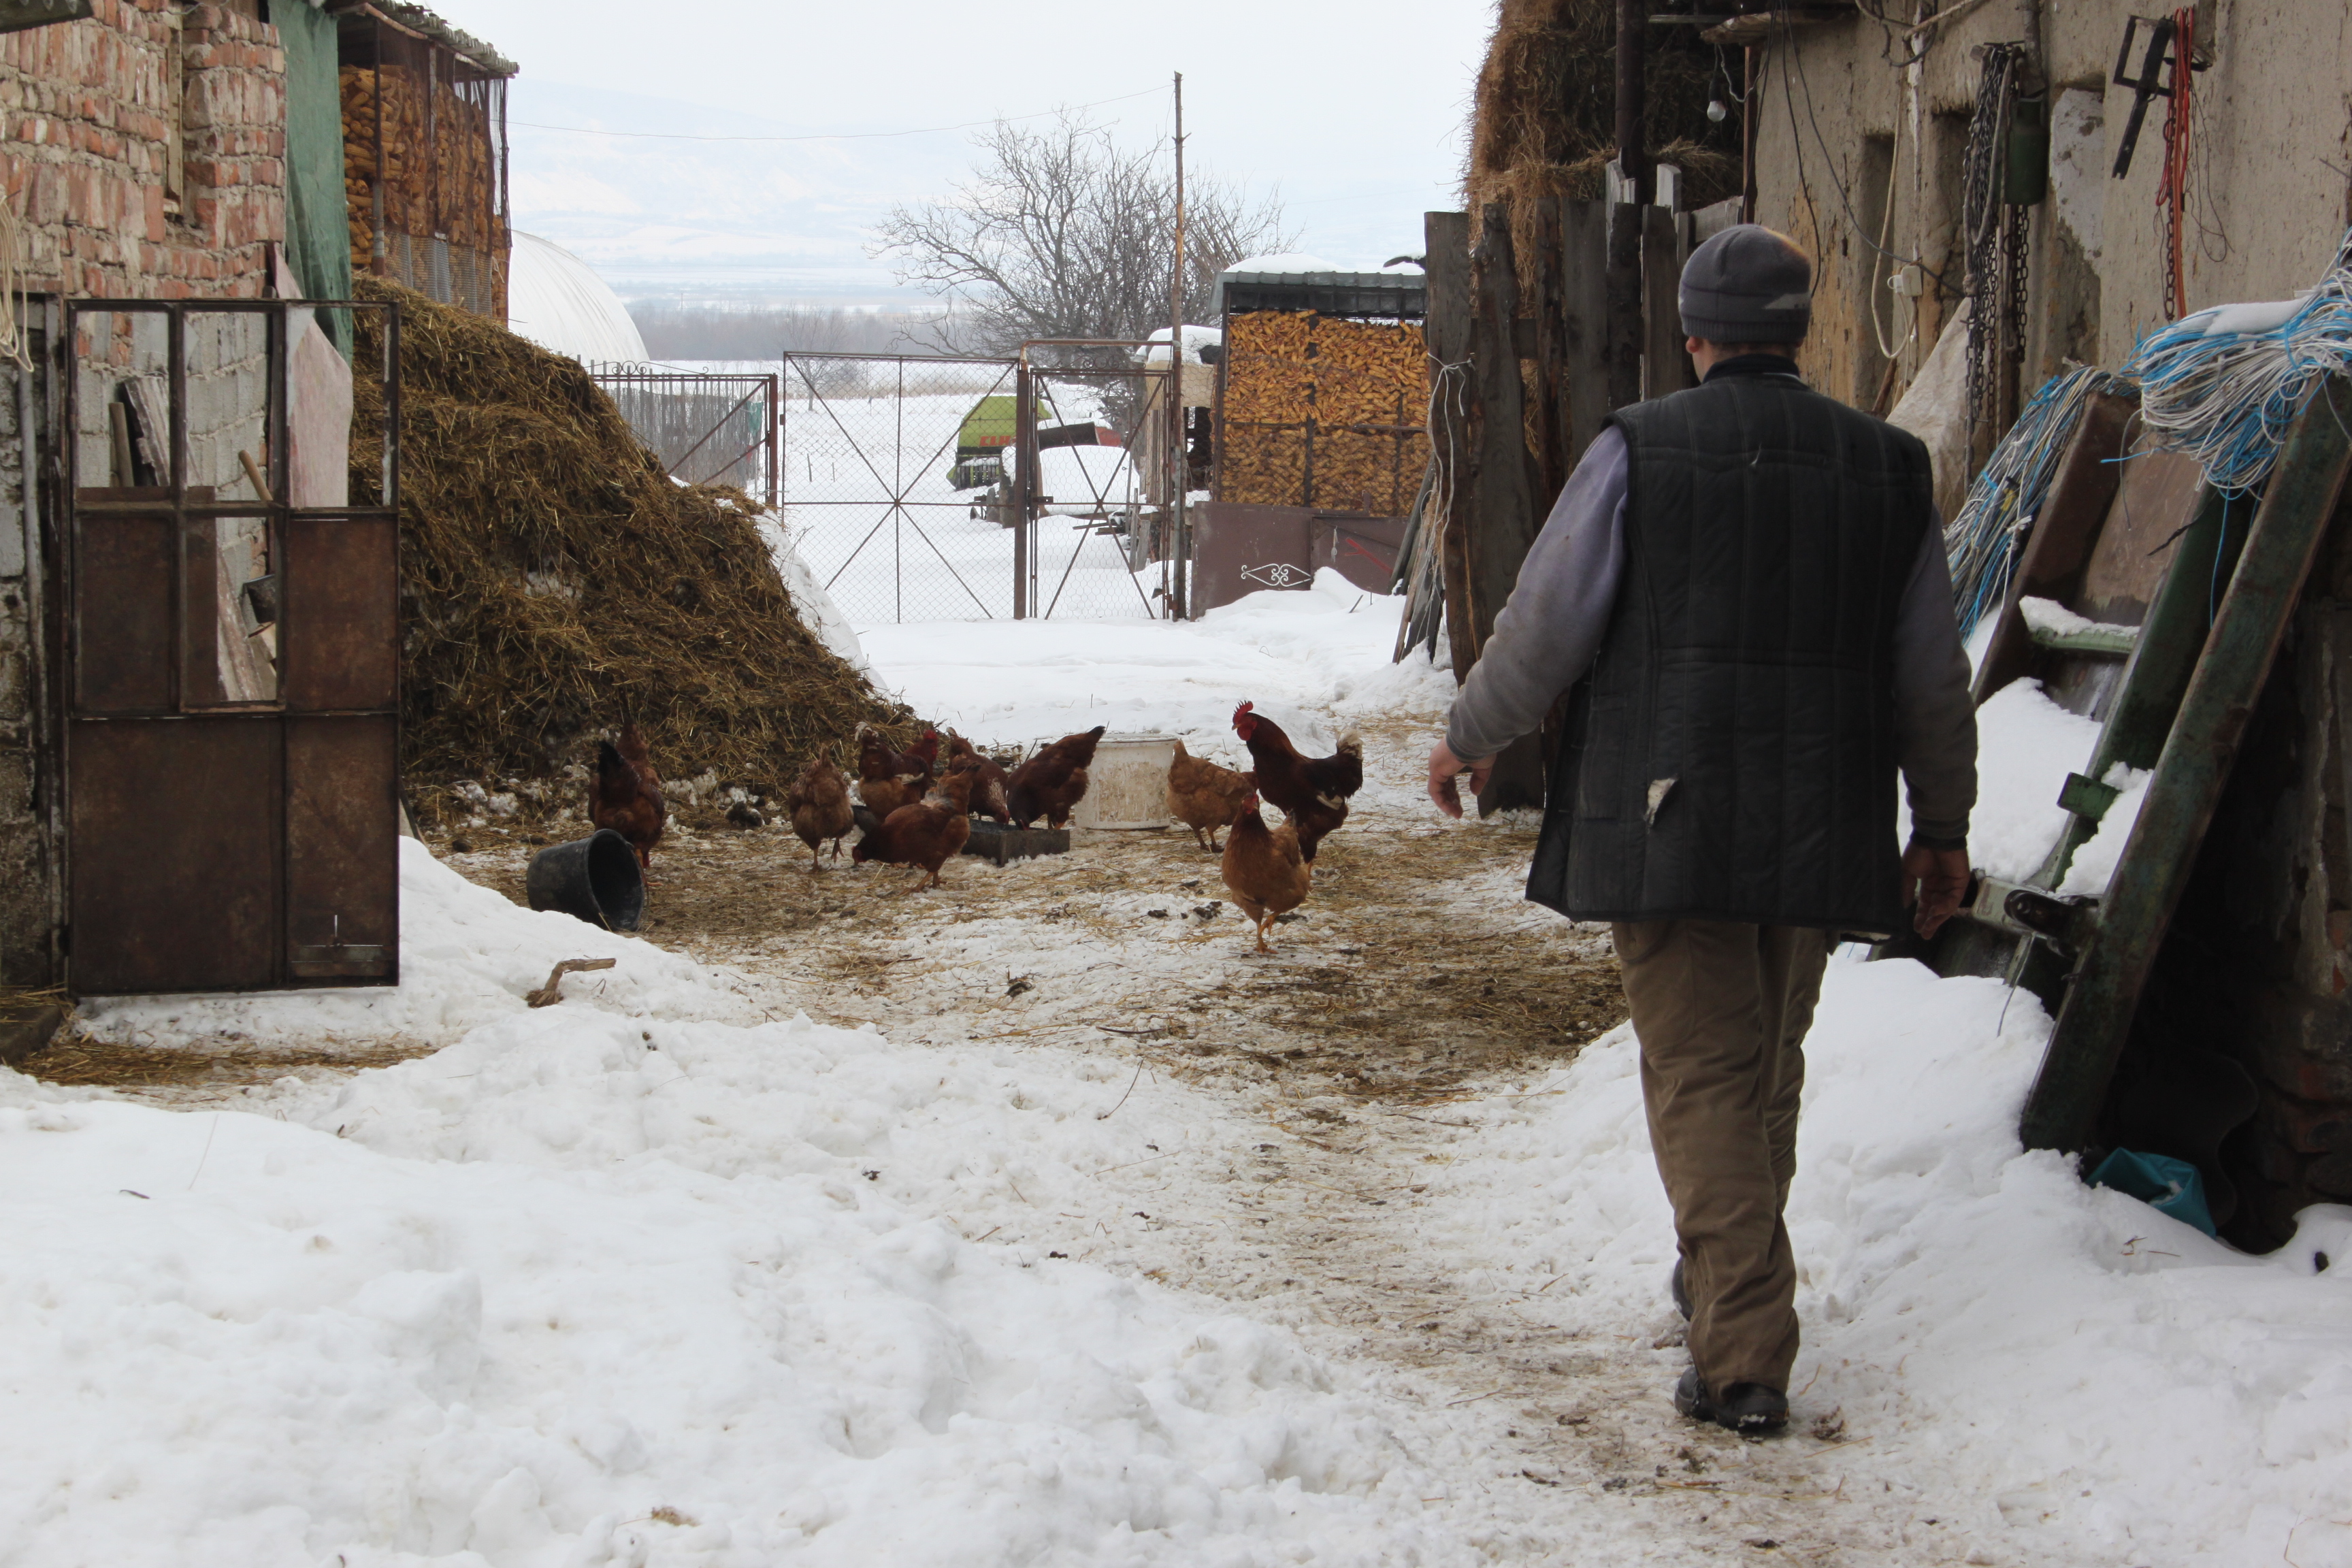 Románia a mezőgazdasági kényszervállalkozások országa: Ha már muszáj, akkor legyen egyszemélyes